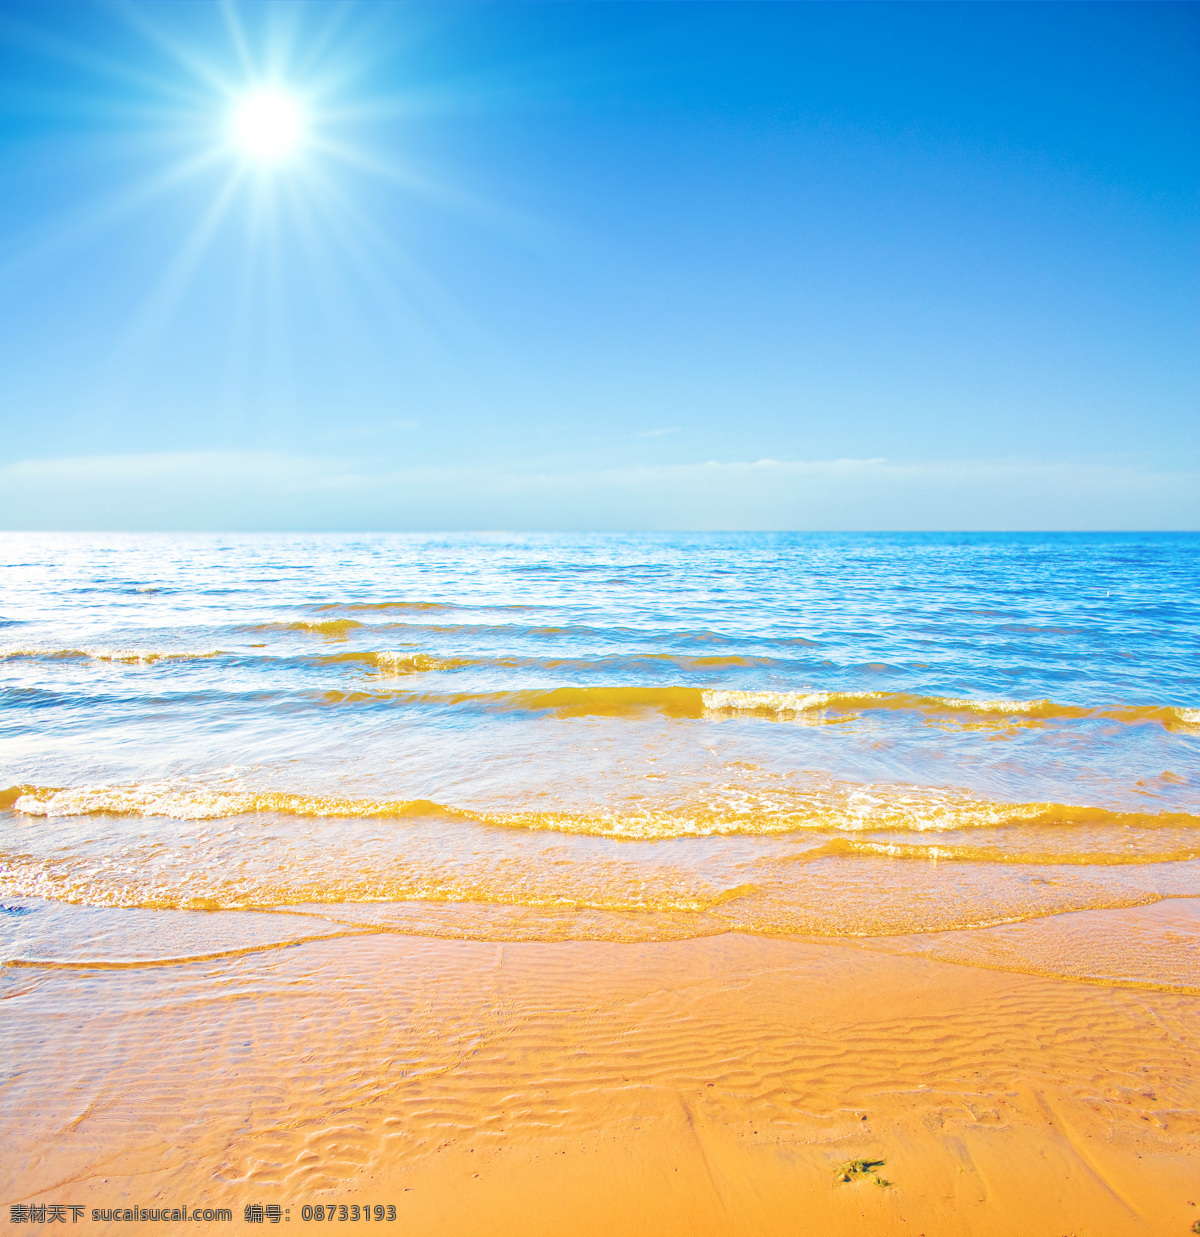 海边 沙滩 风光 大海 海水 天空 阳光 自然风光 休闲旅游 热带风光 大海图片 风景图片